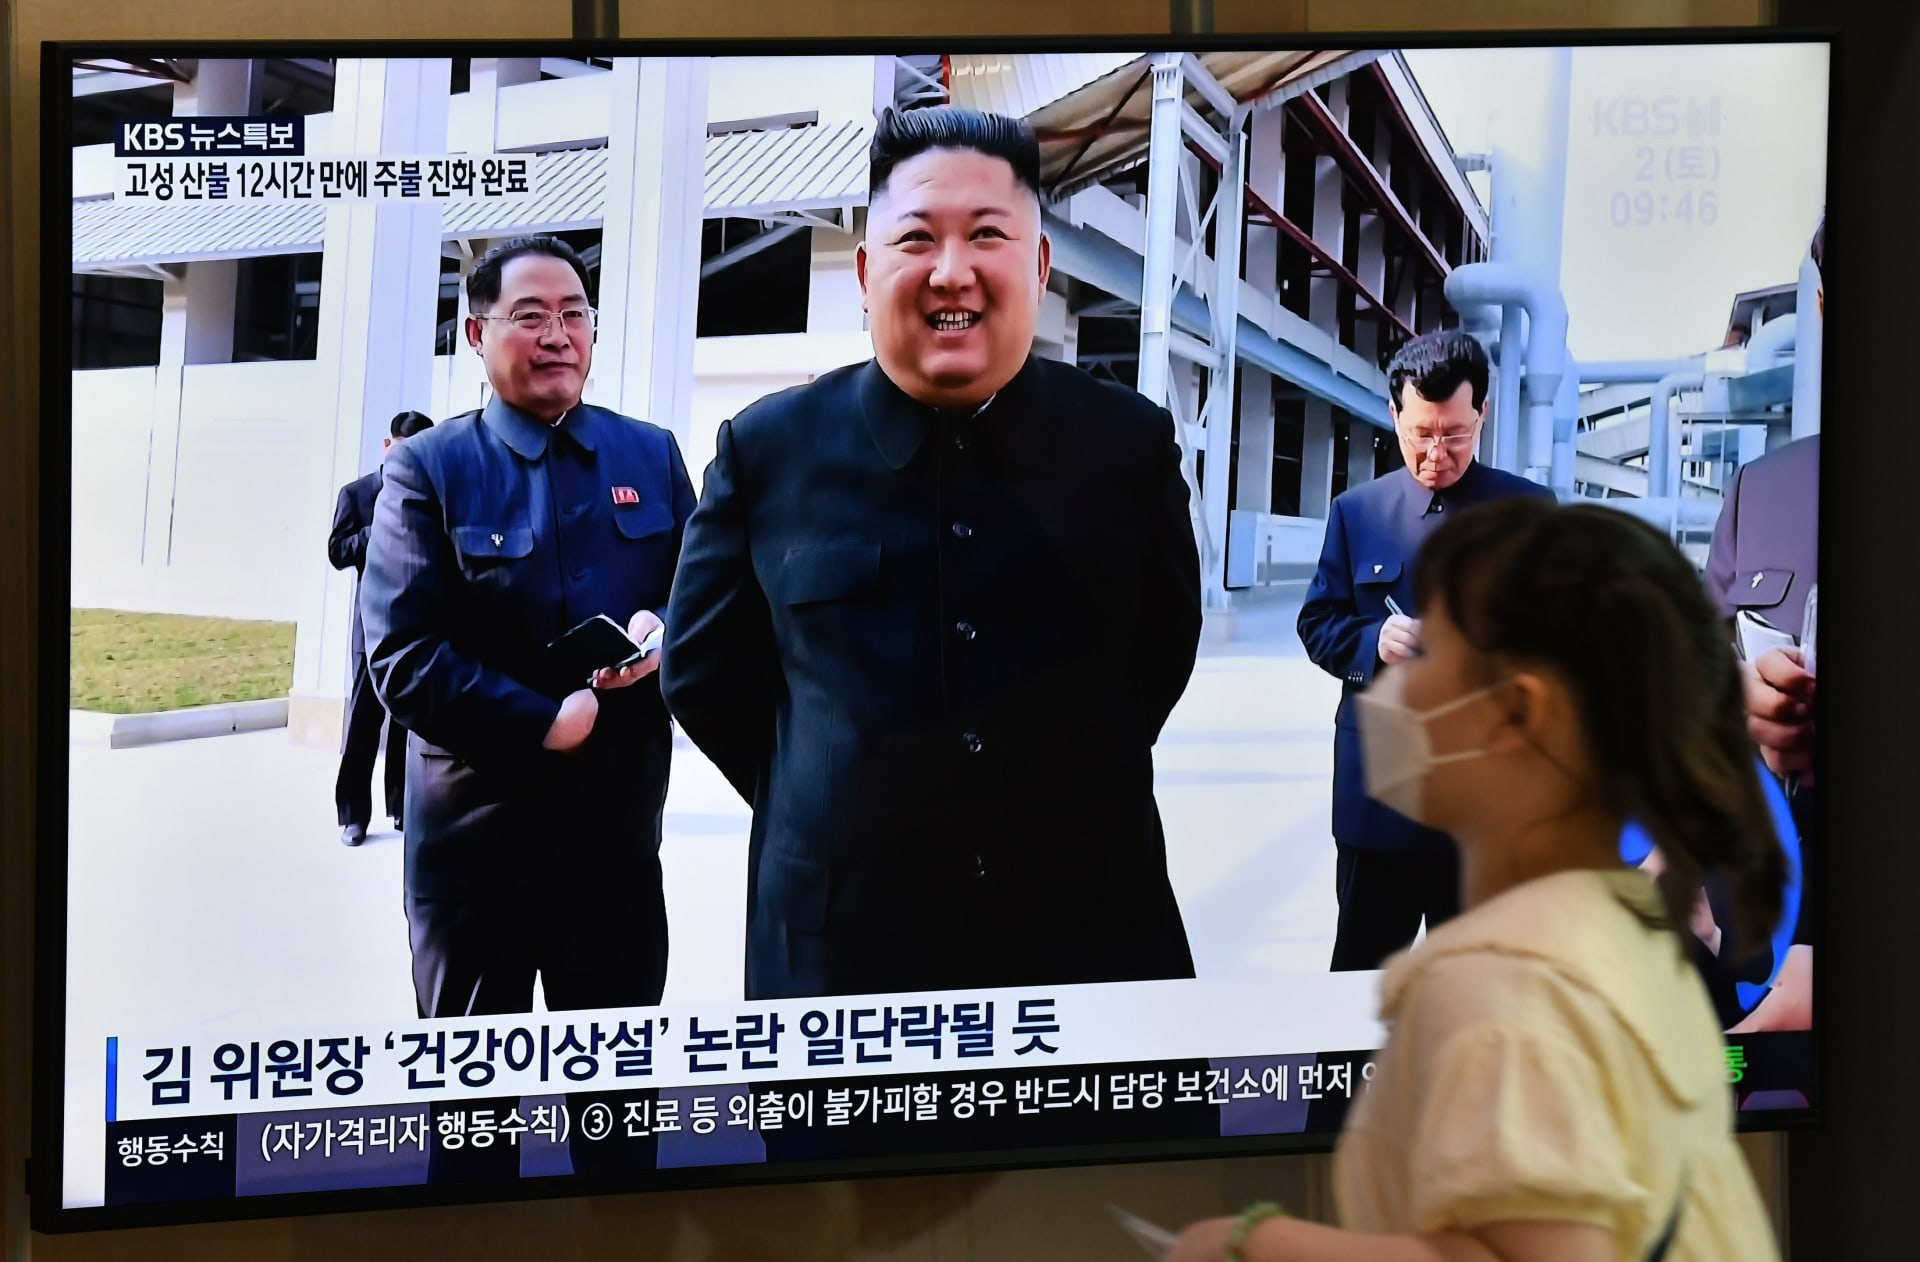 رئيس كوريا الشمالية كيم جونغ أون في آخر ظهور له في مناسية عامة في مايو الماضي